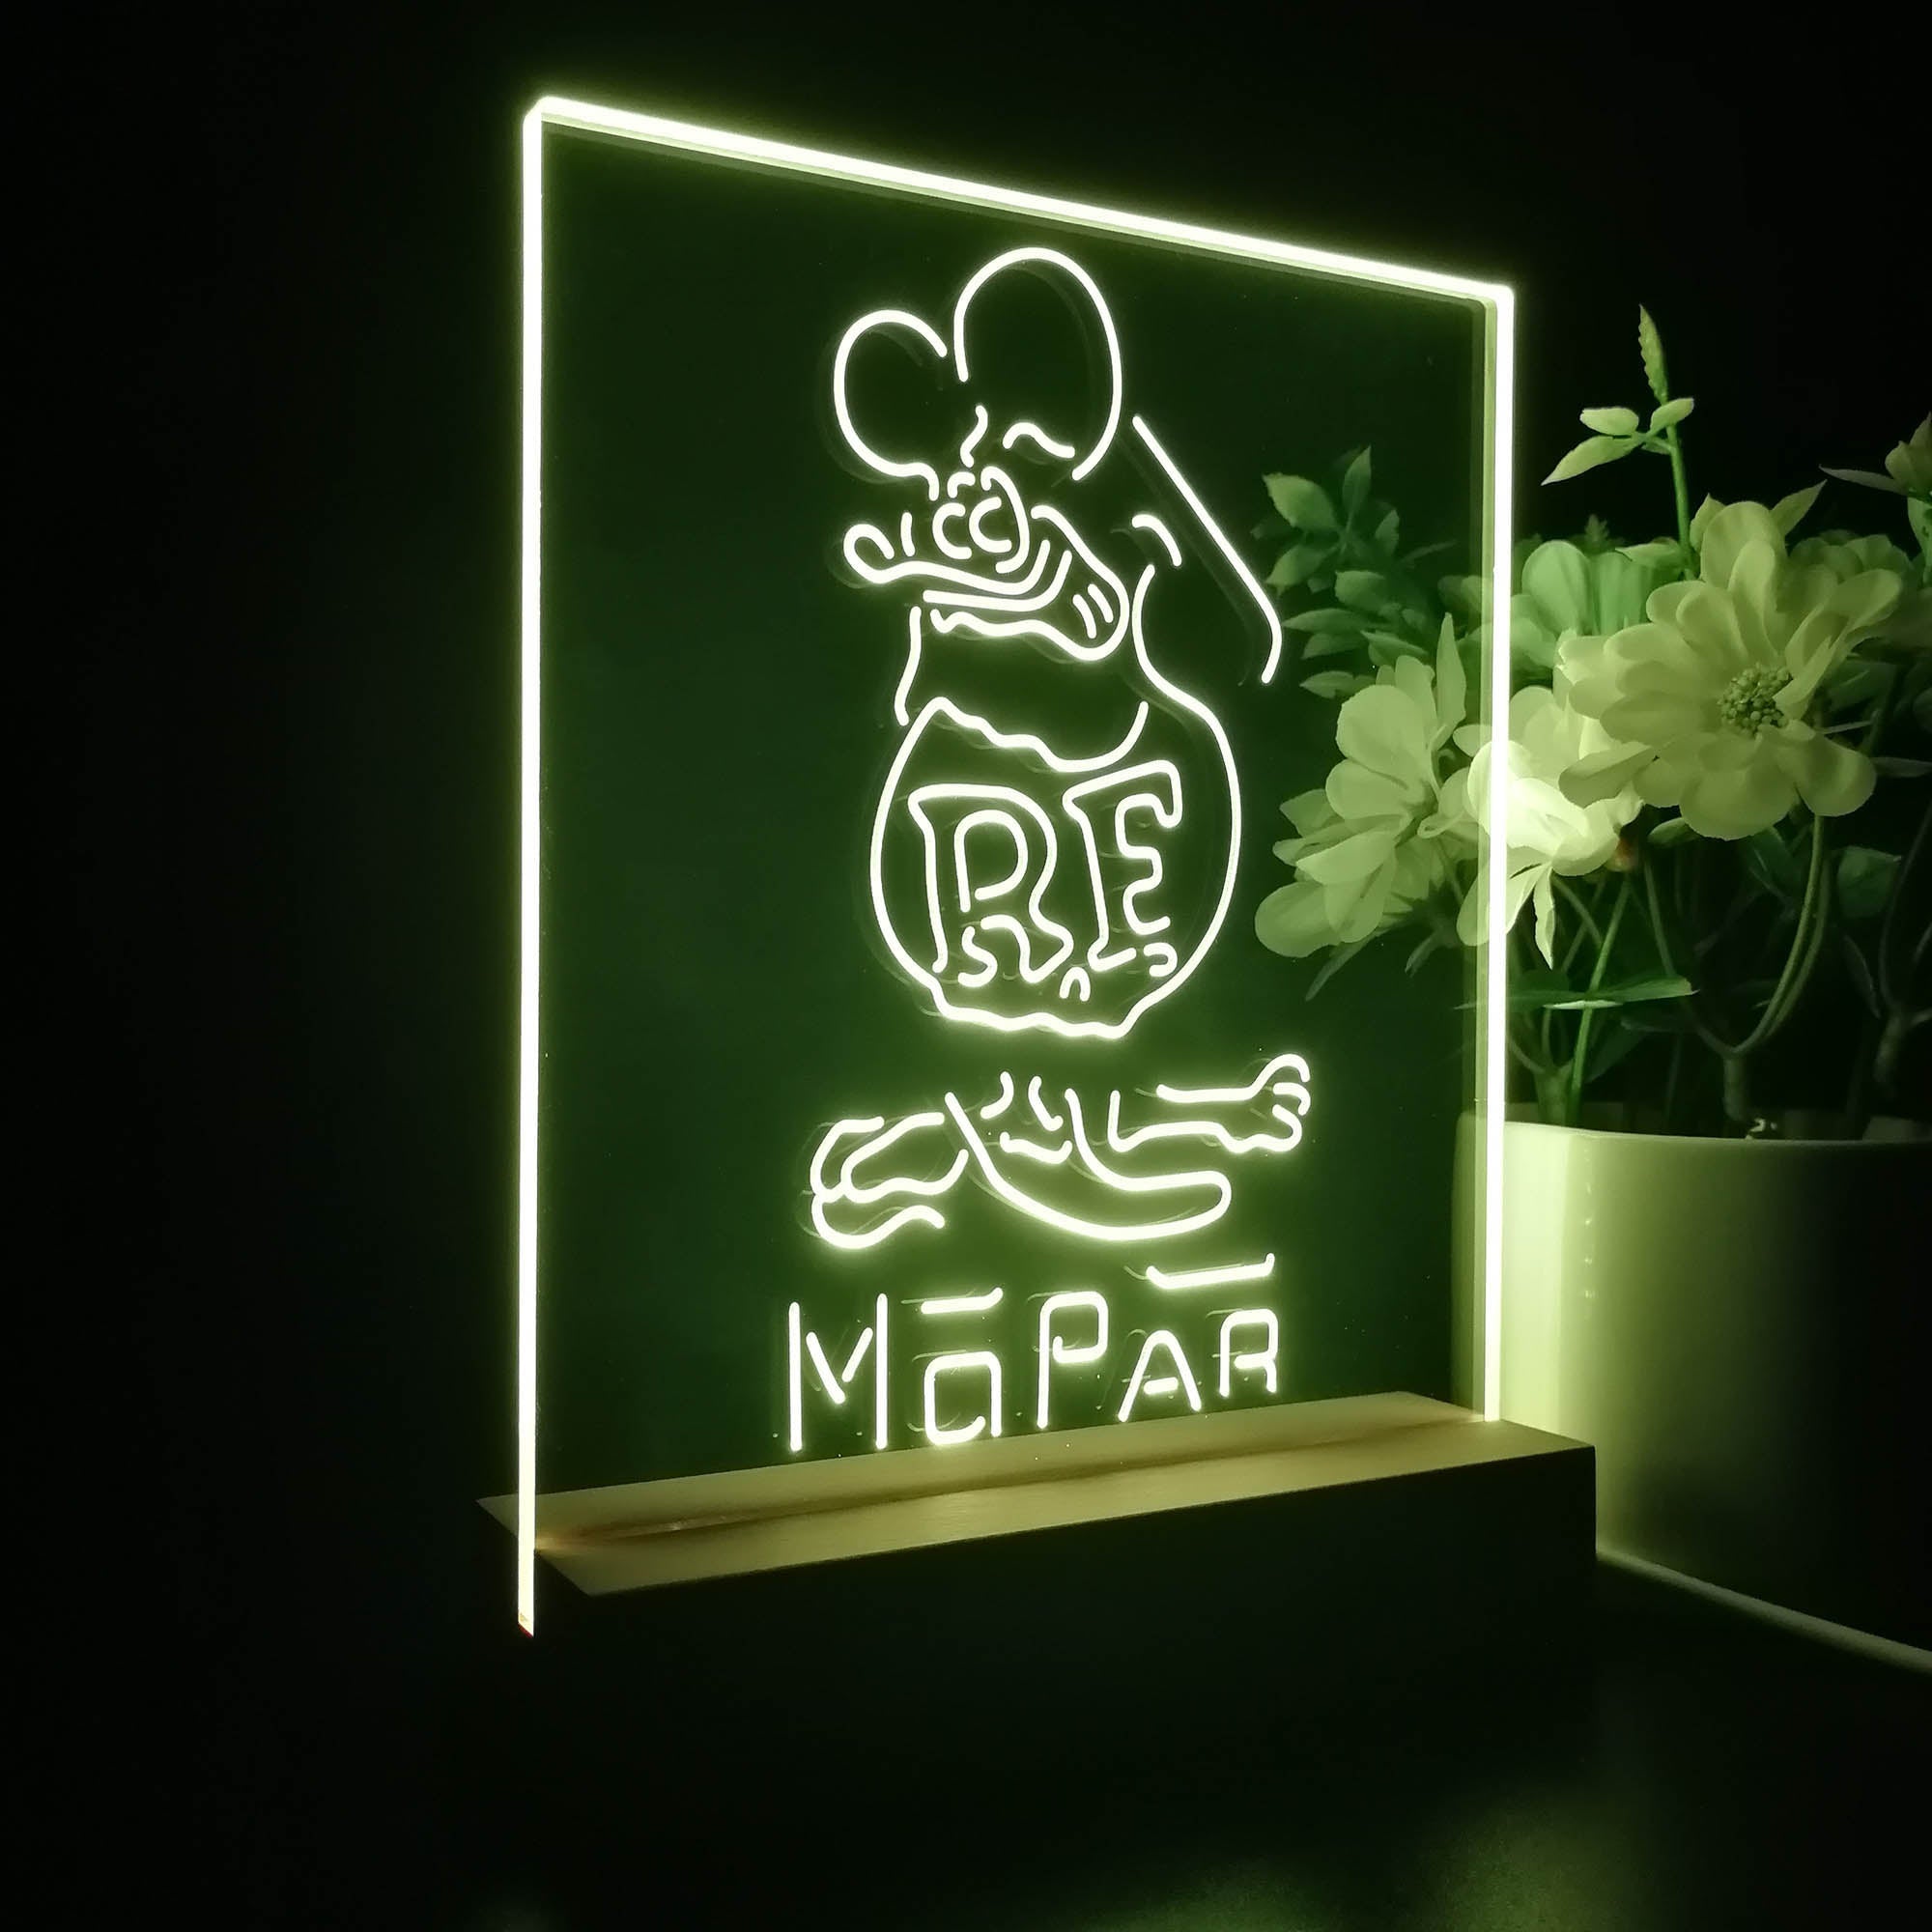 Rat Fink Retro RF Mopar 3D Illusion Night Light Desk Lamp